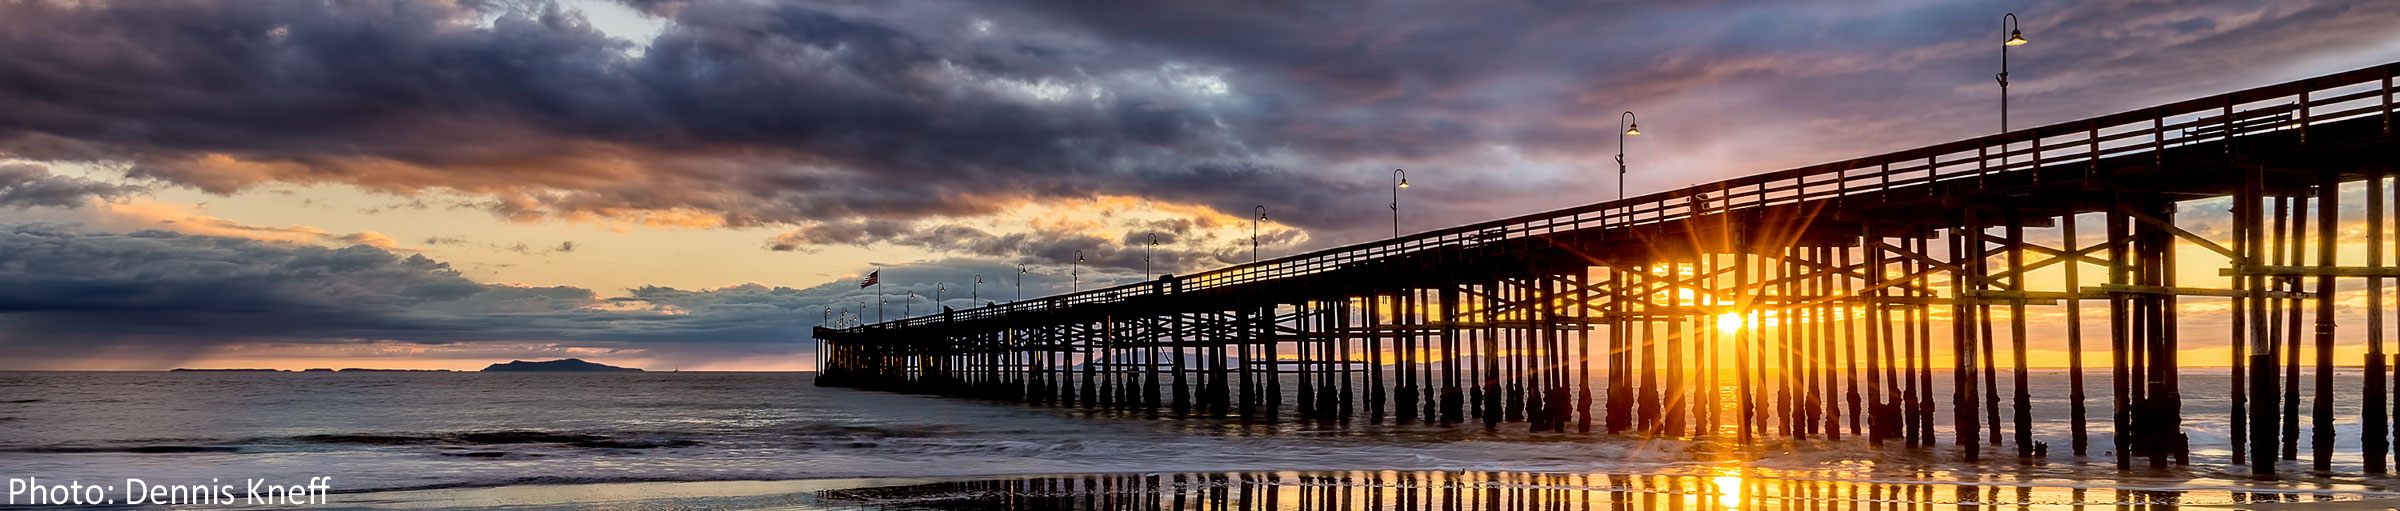 Ventura Pier. Photo by Dennis Kneff